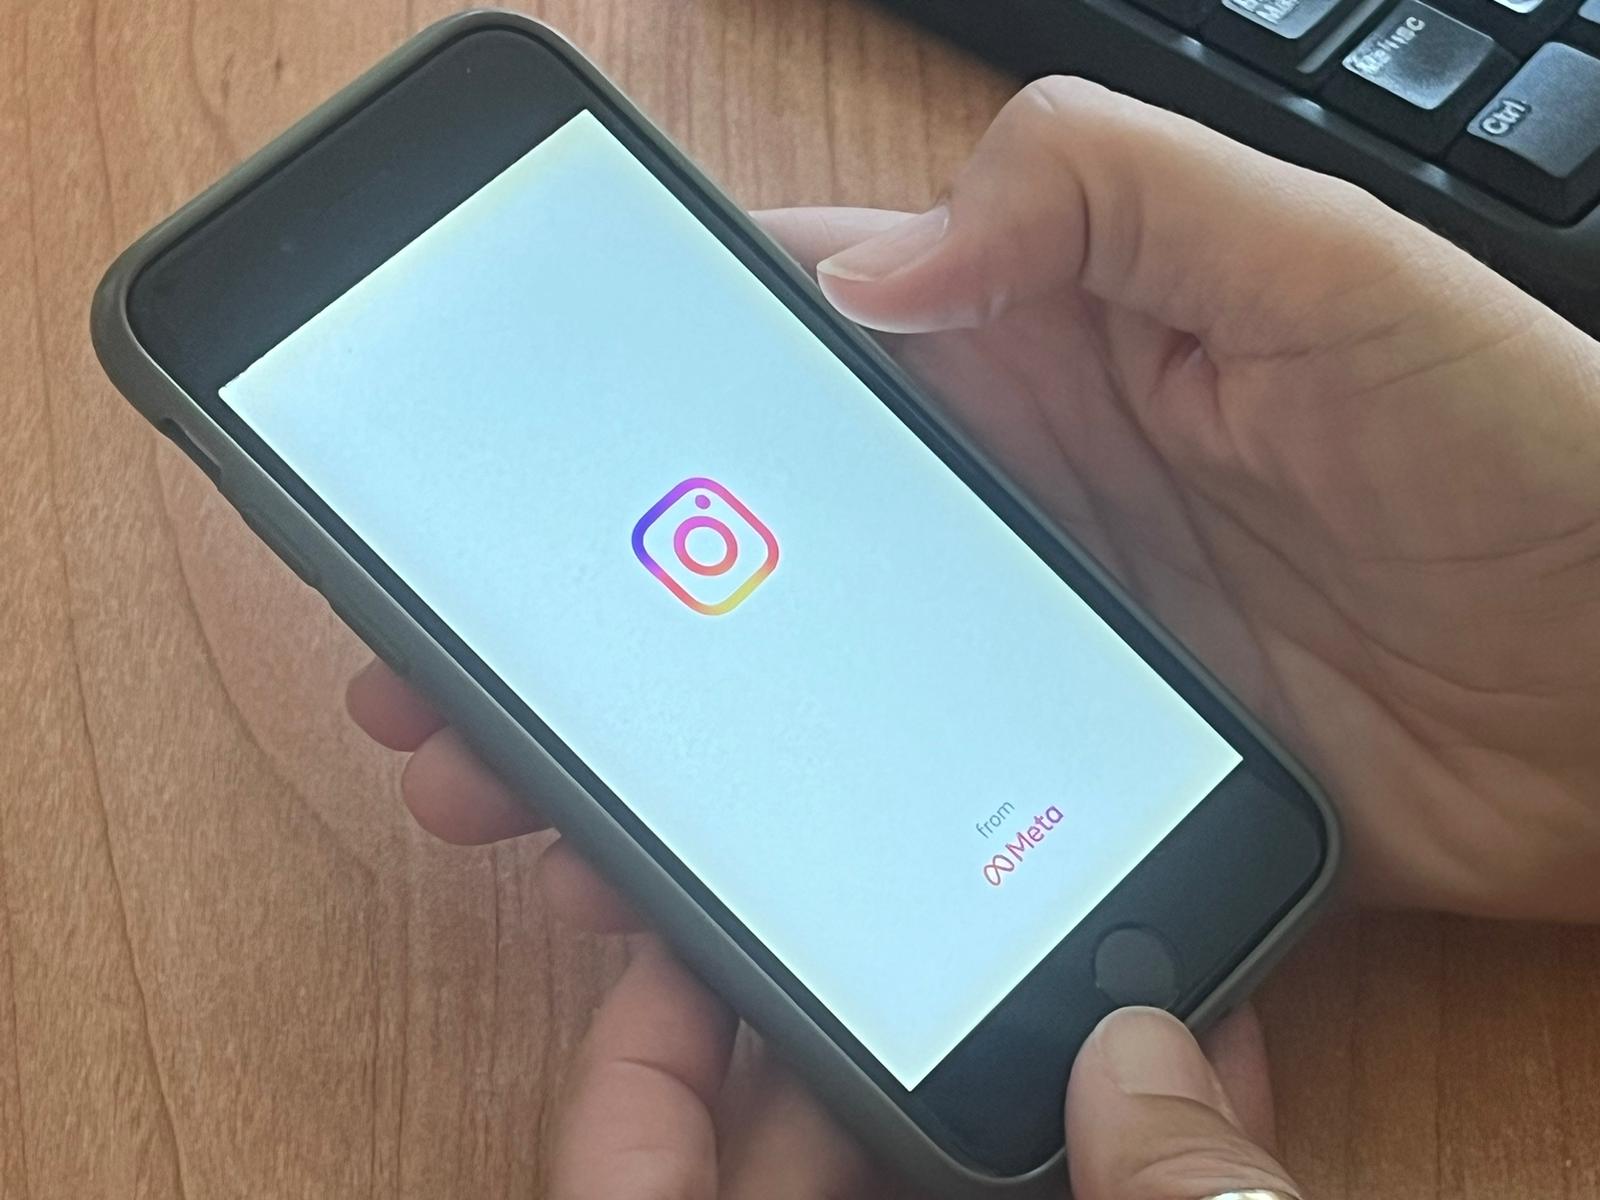 Furto account Instagram, aumentano le segnalazioni alla Polizia. I consigli